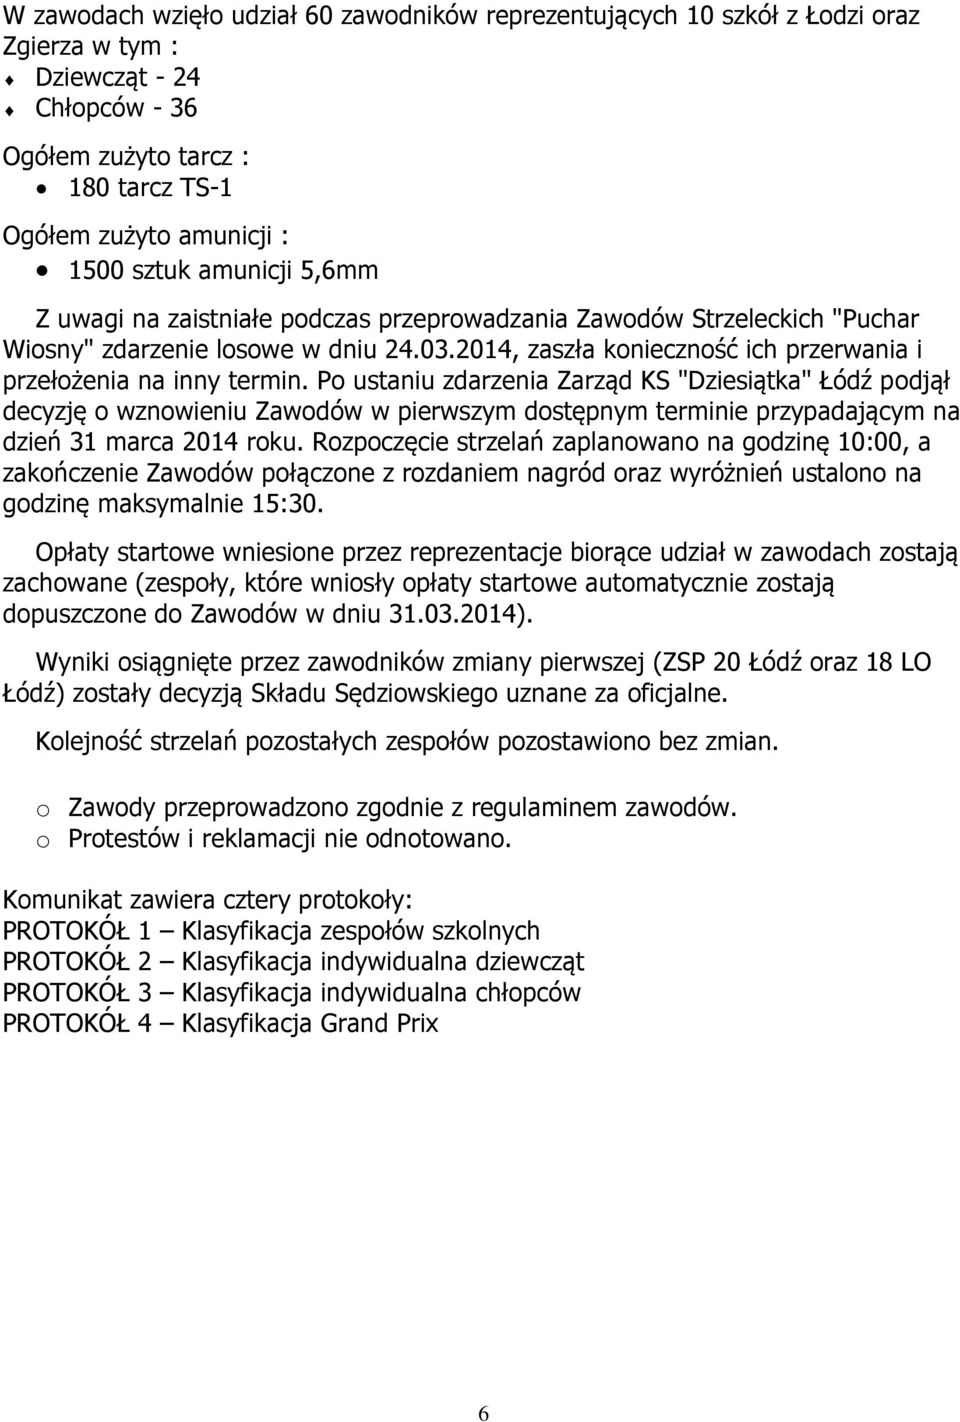 Po ustaniu zdarzenia Zarząd KS "Dziesiątka" Łódź podjął decyzję o wznowieniu Zawodów w pierwszym dostępnym terminie przypadającym na dzień 31 marca 2014 roku.